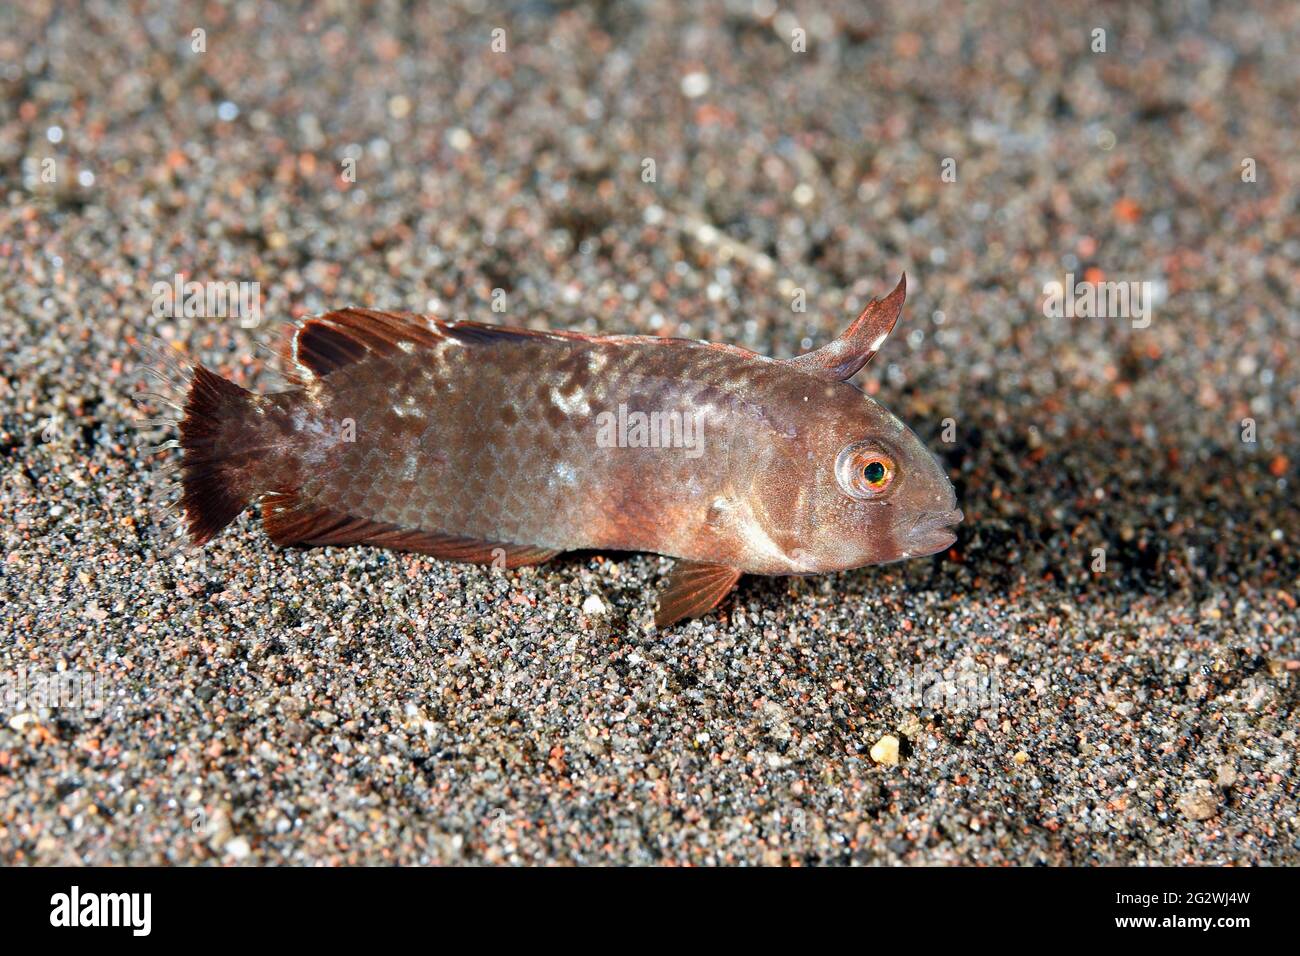 Whitepatch Razorfish, Iniistius aneitensis, juvenile phase.Tulamben, Bali, Indonesia. Bali Sea, Indian Ocean Stock Photo